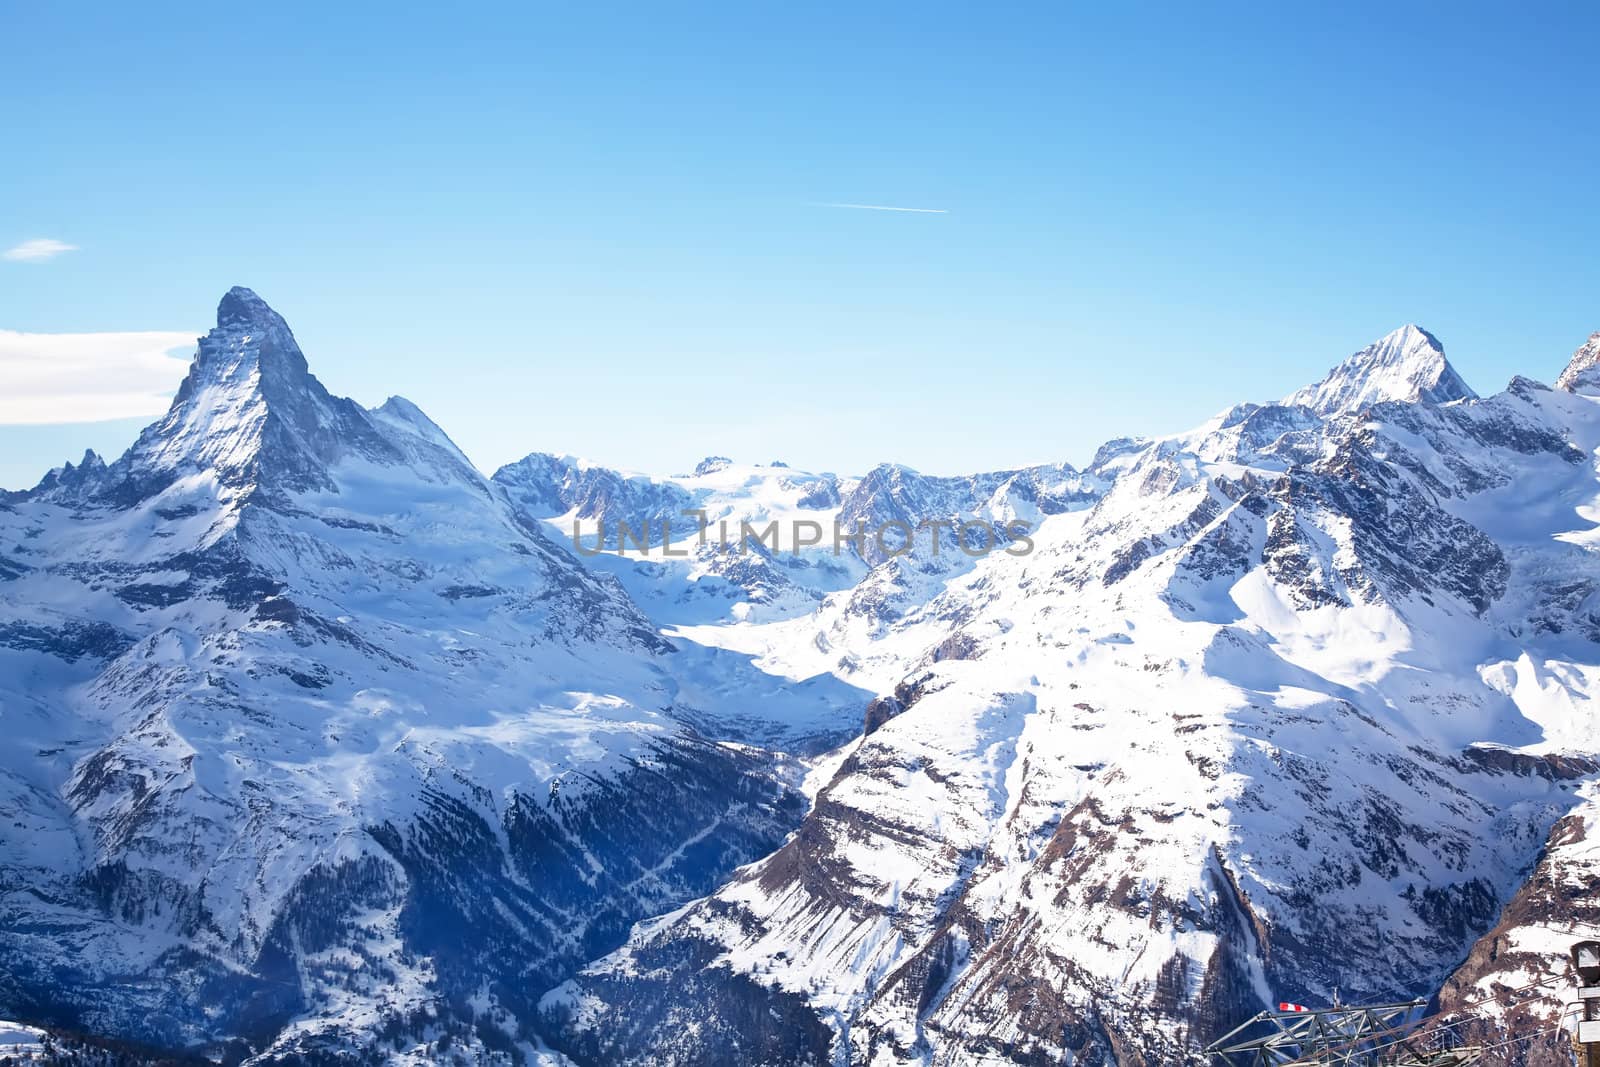 Matterhorn mountain by RawGroup